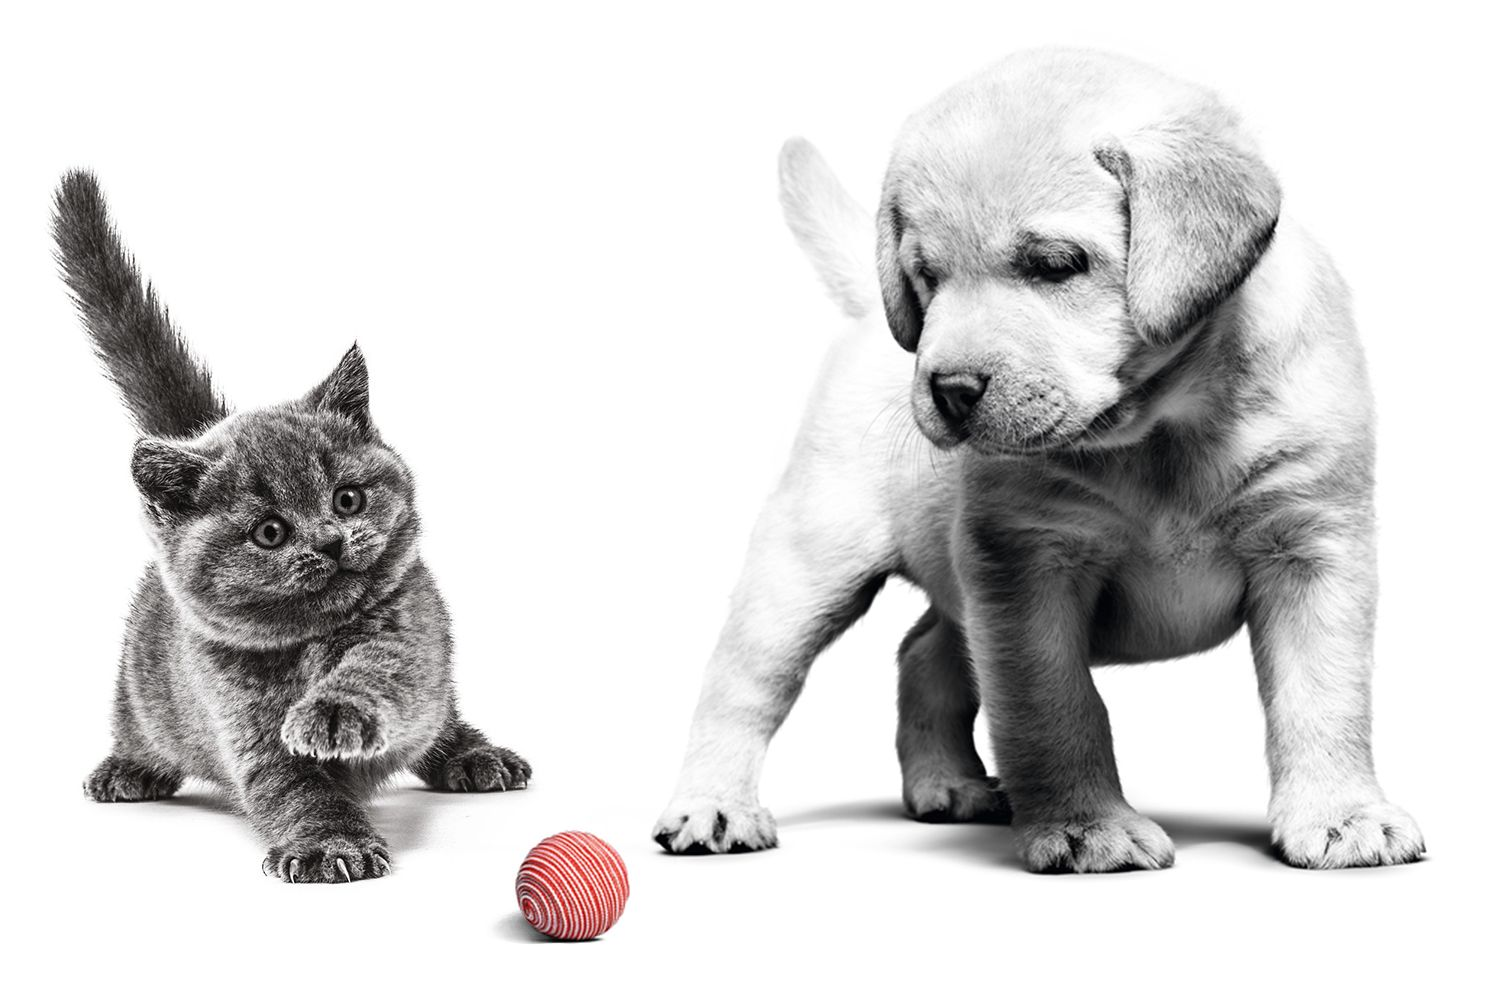 Ein Schwarzweiß-Foto eines dunklen Kätzchens und eines hellen Hundewelpen, die nebeneinanderstehen. Das Kätzchen hat eine Vorderpfote erhoben, der Hundewelpe schaut auf einen zwischen ihnen liegenden roten Ball